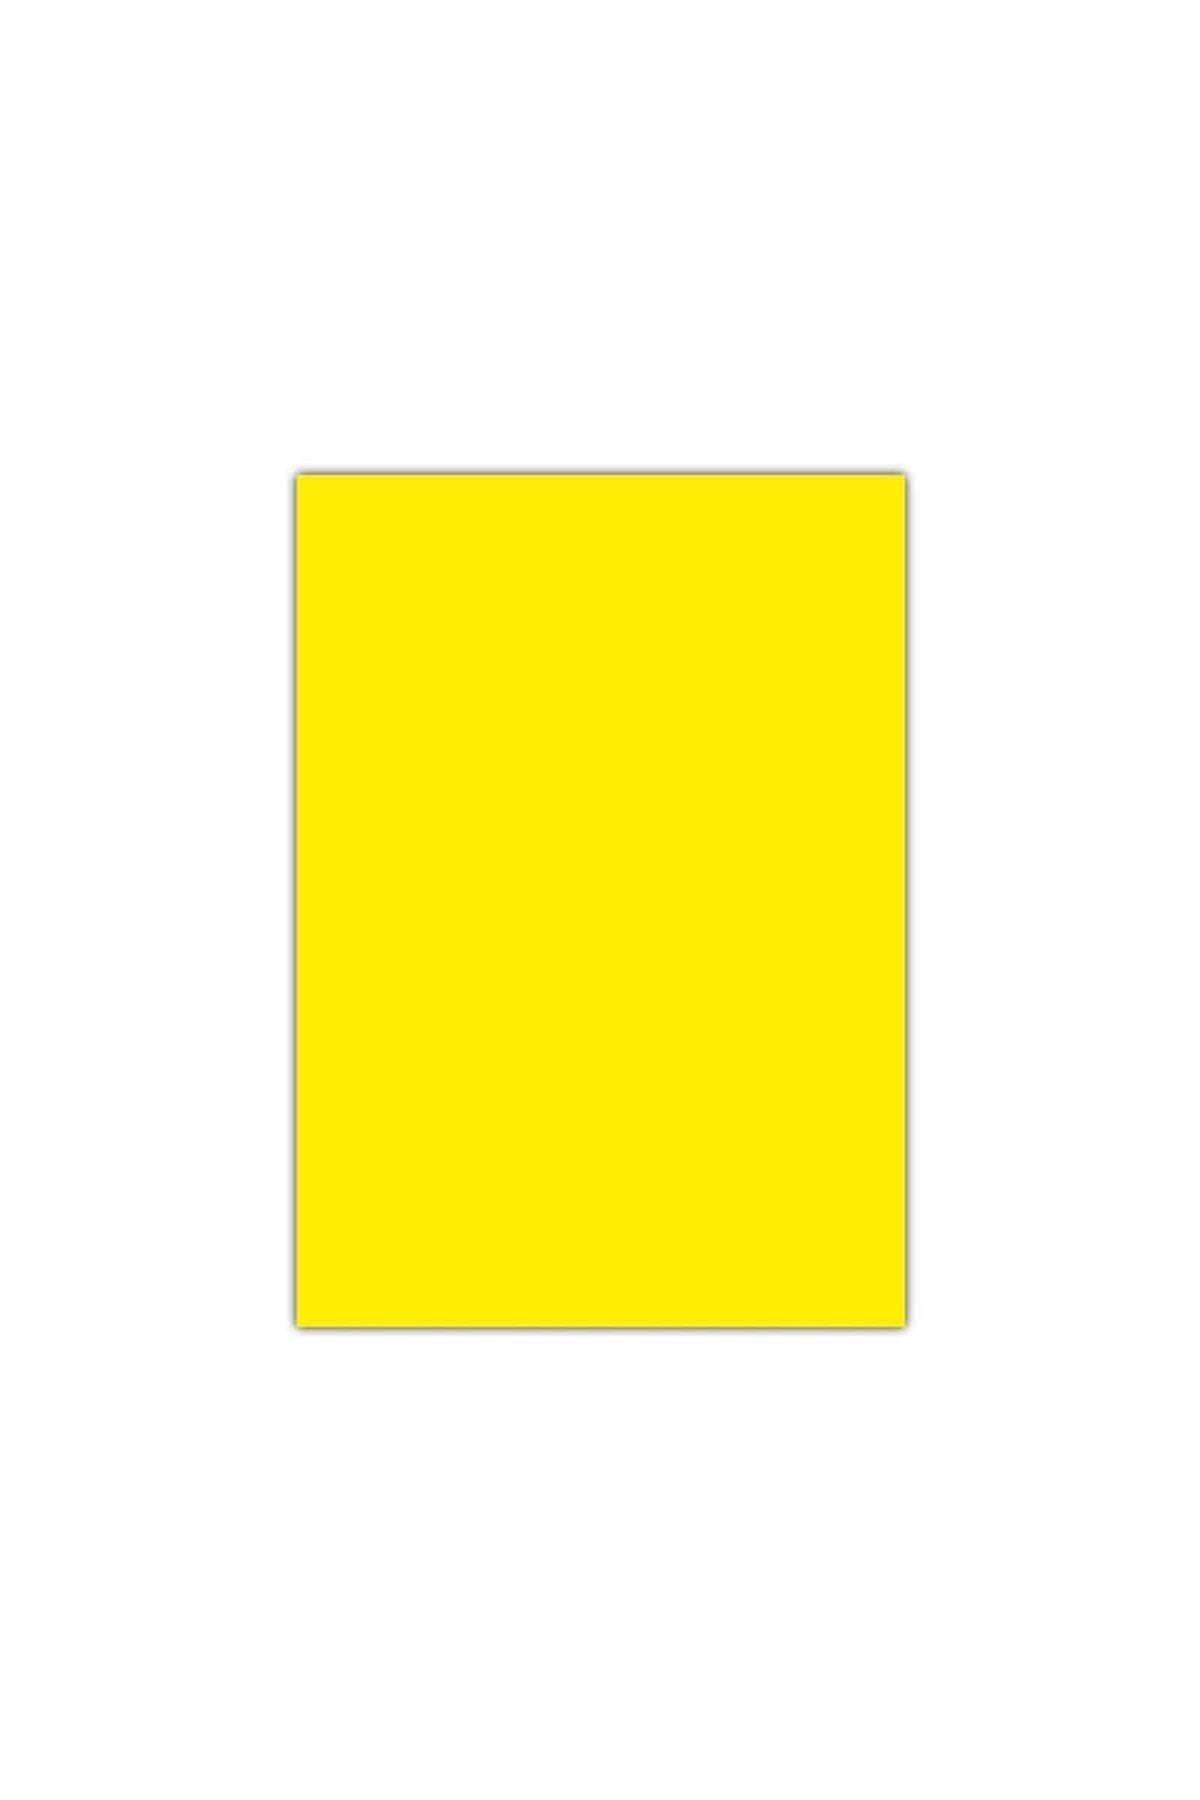 Umur Fosforlu Sarı Fon Kartonu 50 X 70 Cm 120 Gram (100 Lü Paket)